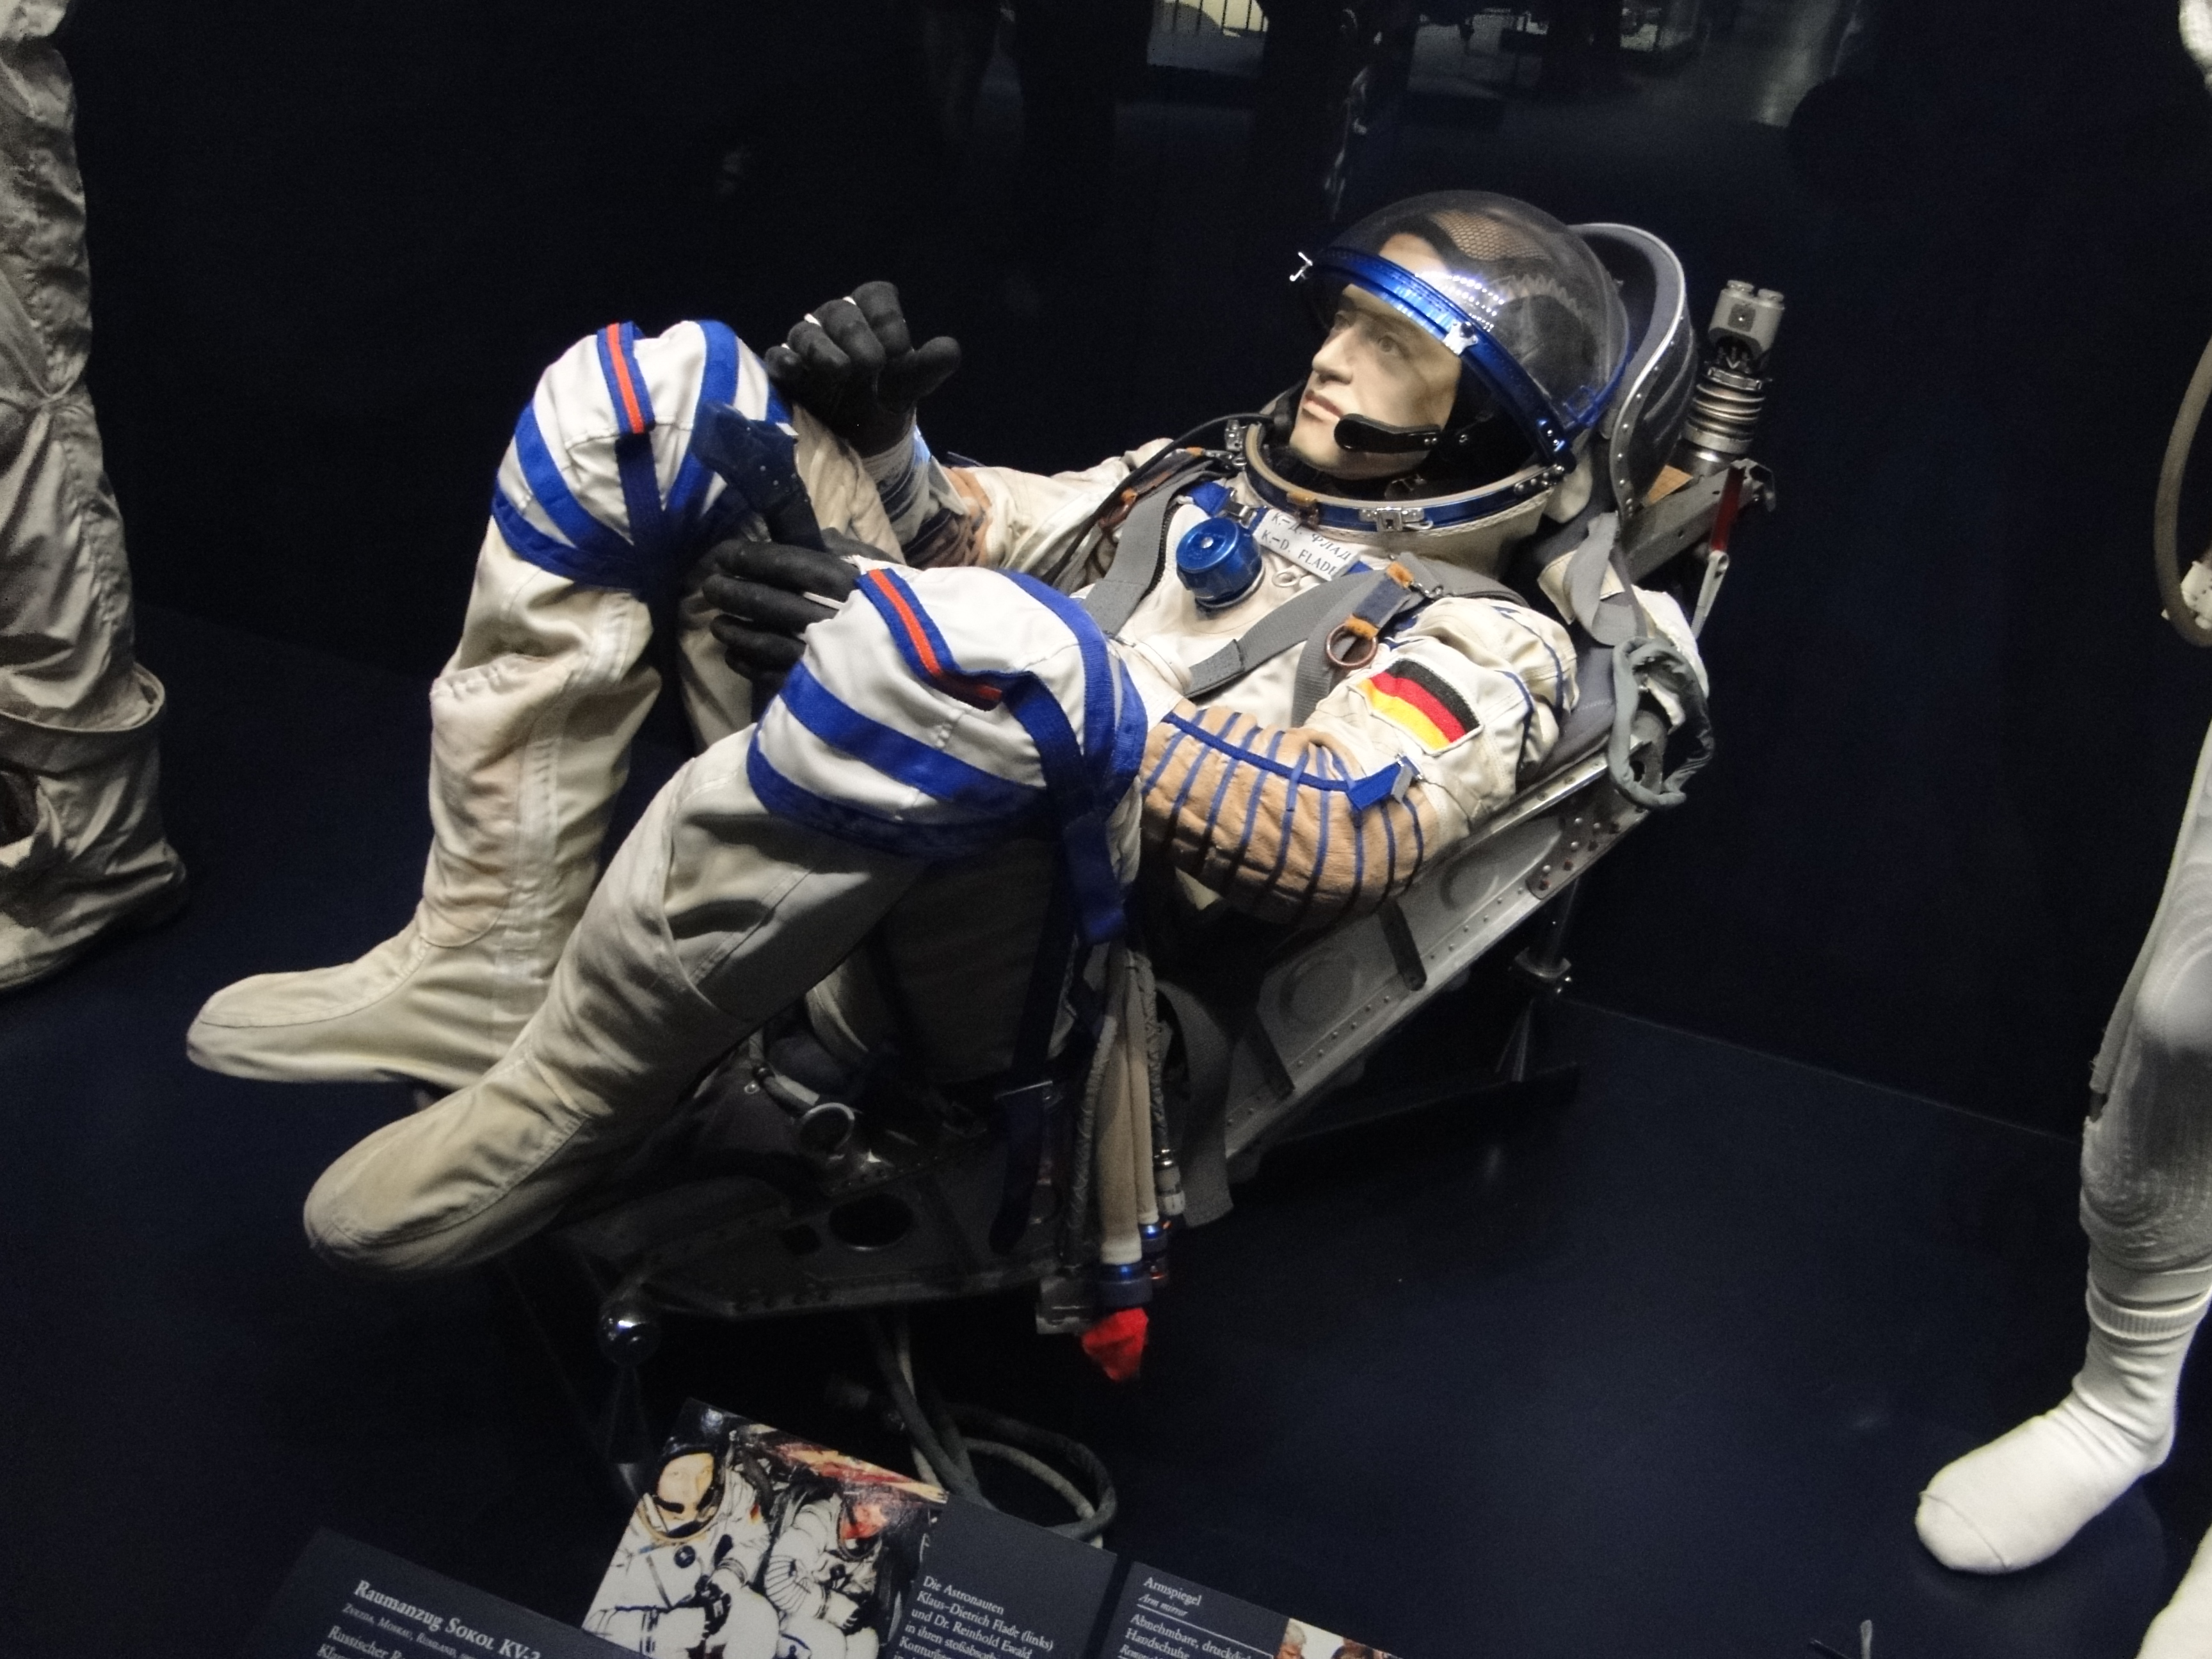 Deutsches Museum, deutscher Astronaut in russischem Raumanzug